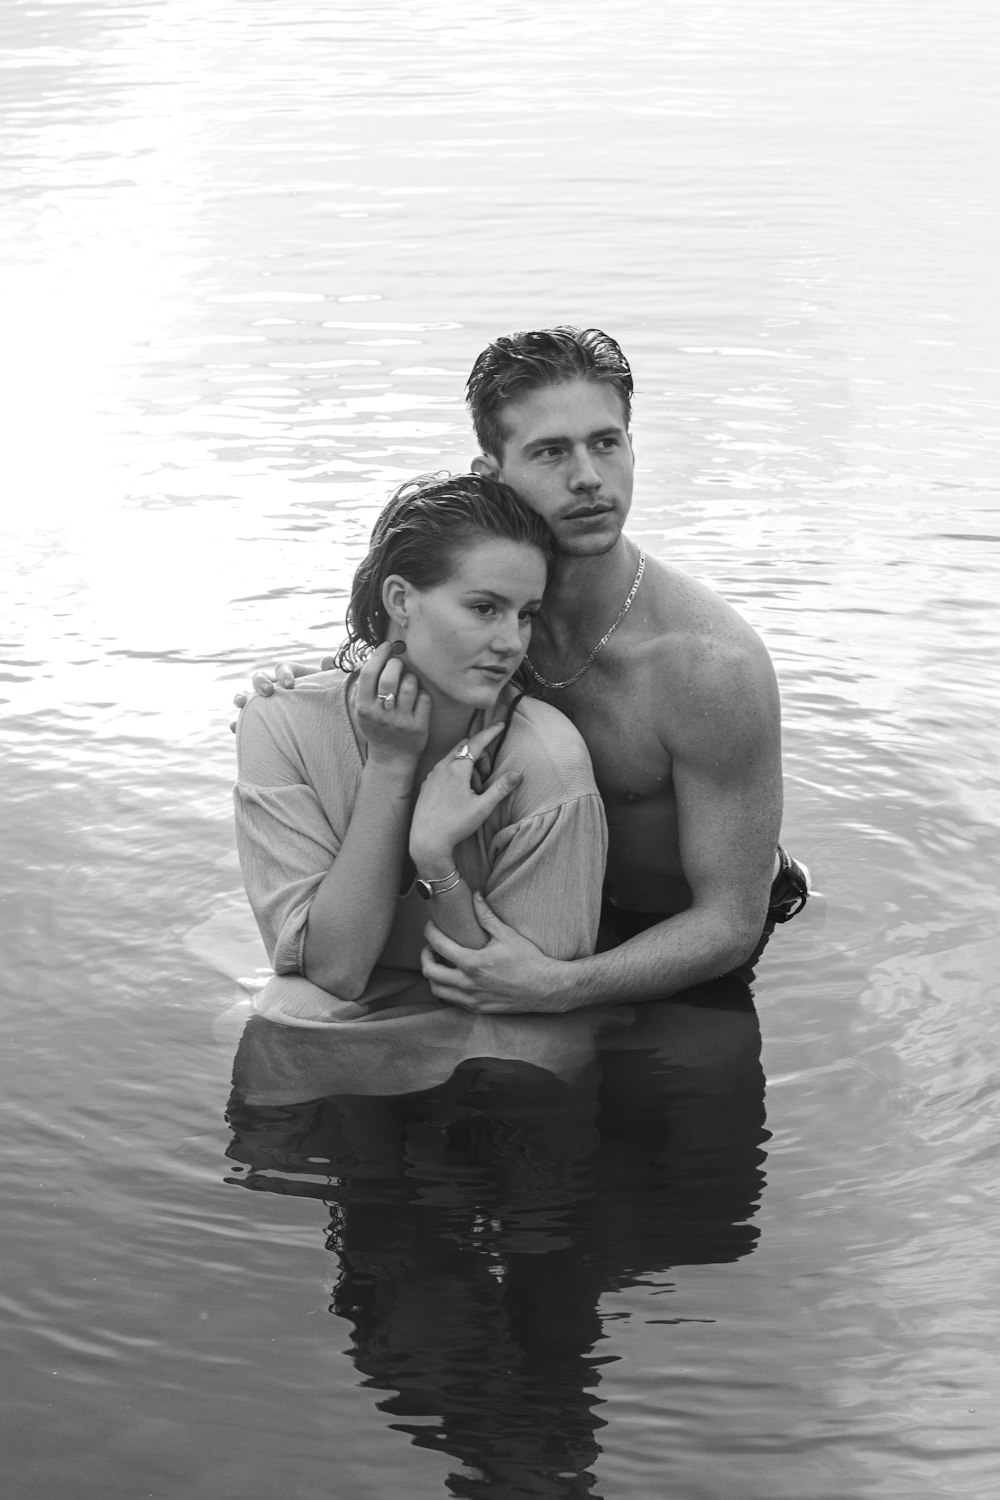 물 위의 남자와 여자의 그레이스케일 사진